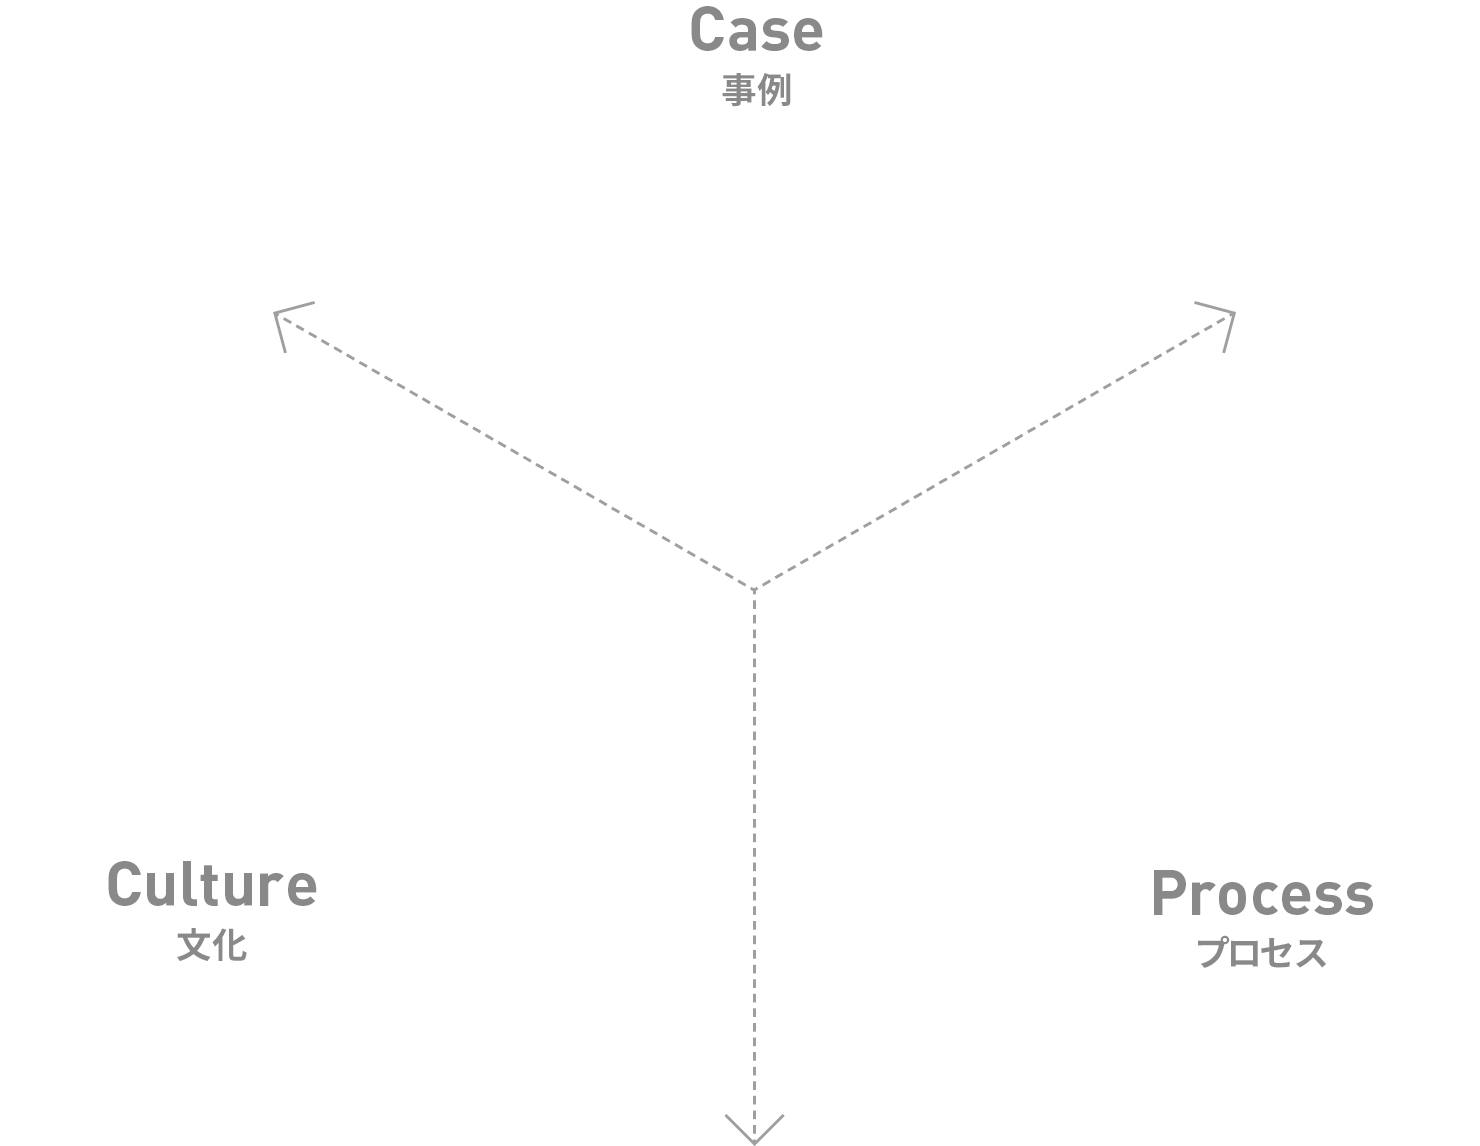 「事例」「プロセス」「文化」のモデル図